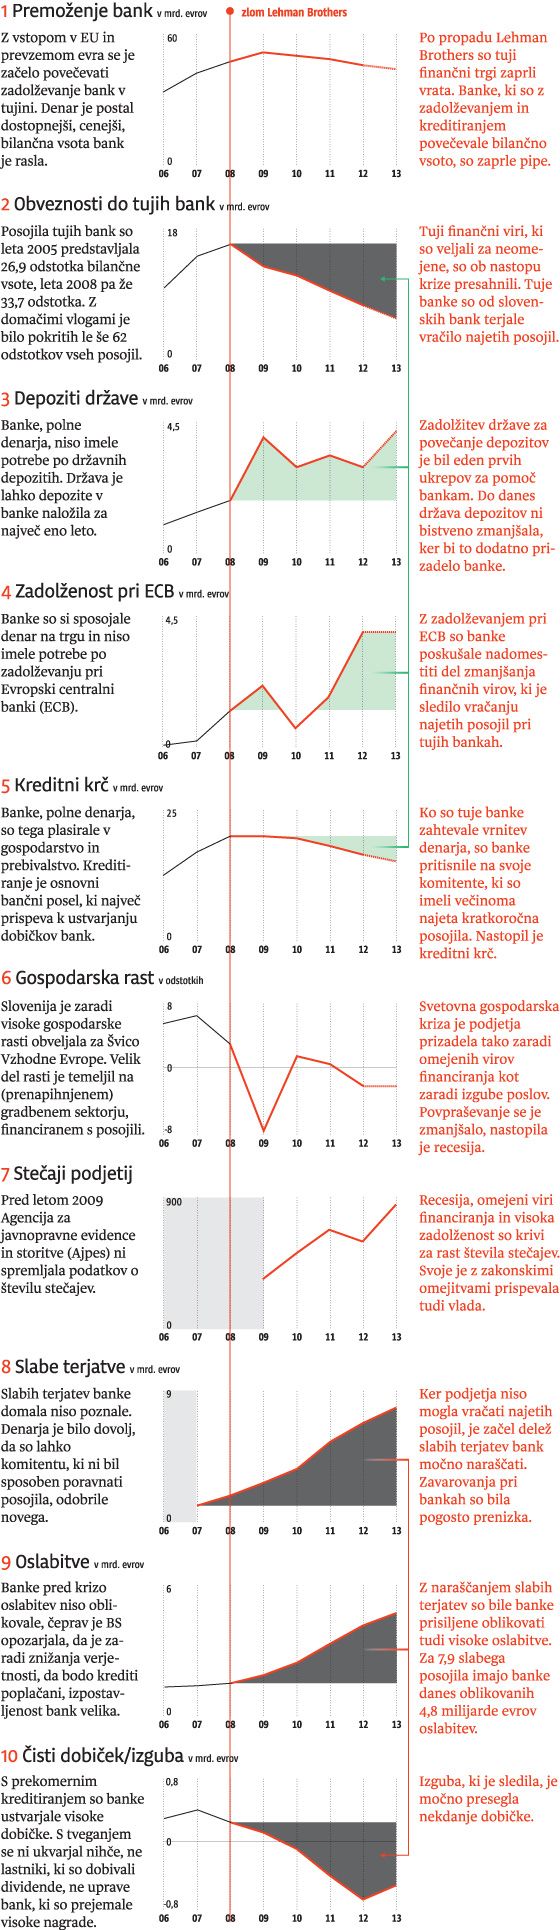 Bančna kriza Slovenije v desetih slikah